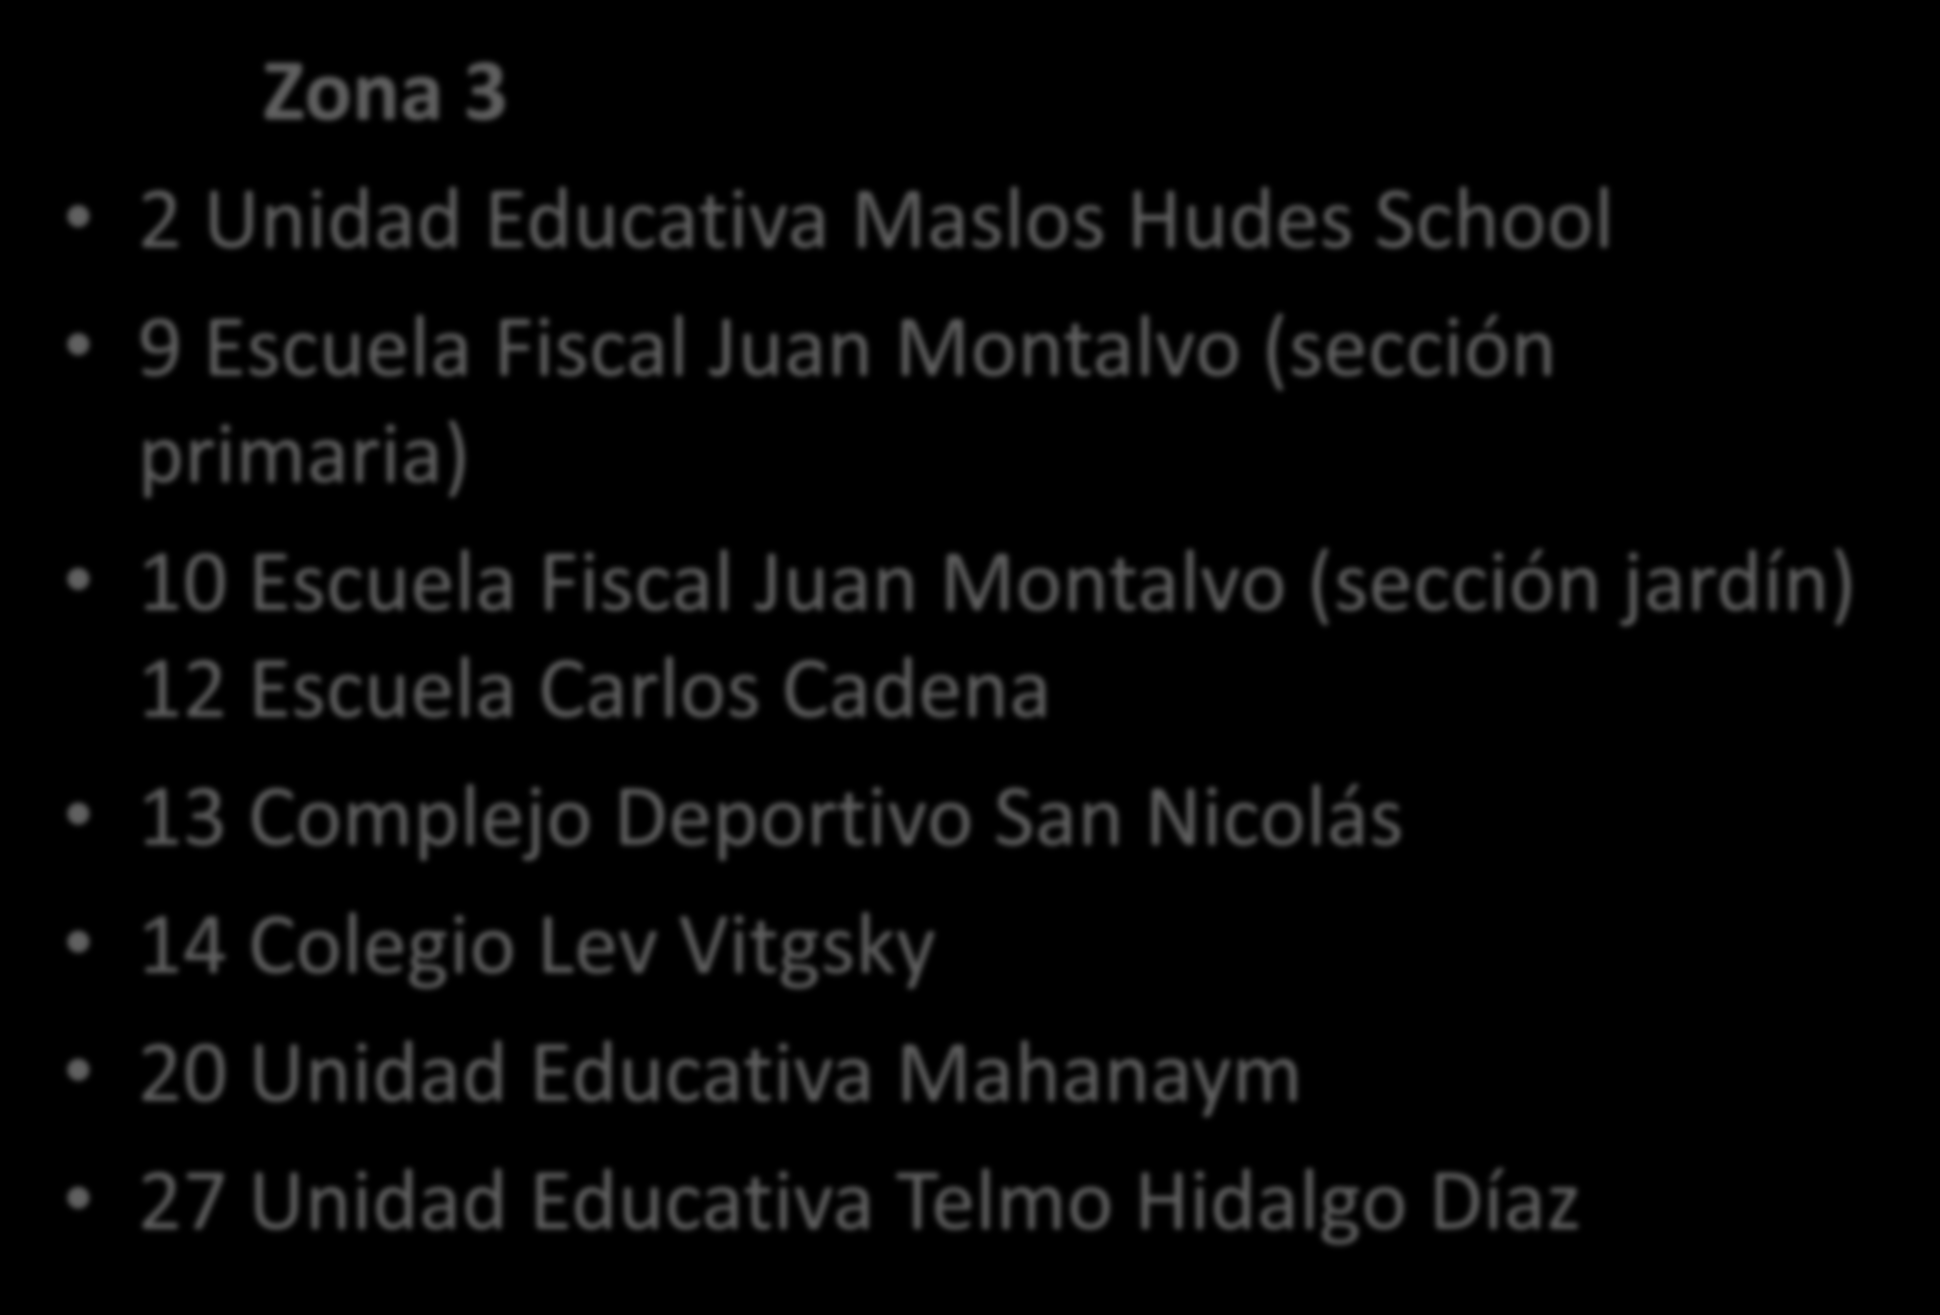 Zona 3 2 Unidad Educativa Maslos Hudes School 9 Escuela Fiscal Juan Montalvo (sección primaria) 10 Escuela Fiscal Juan Montalvo (sección jardín)